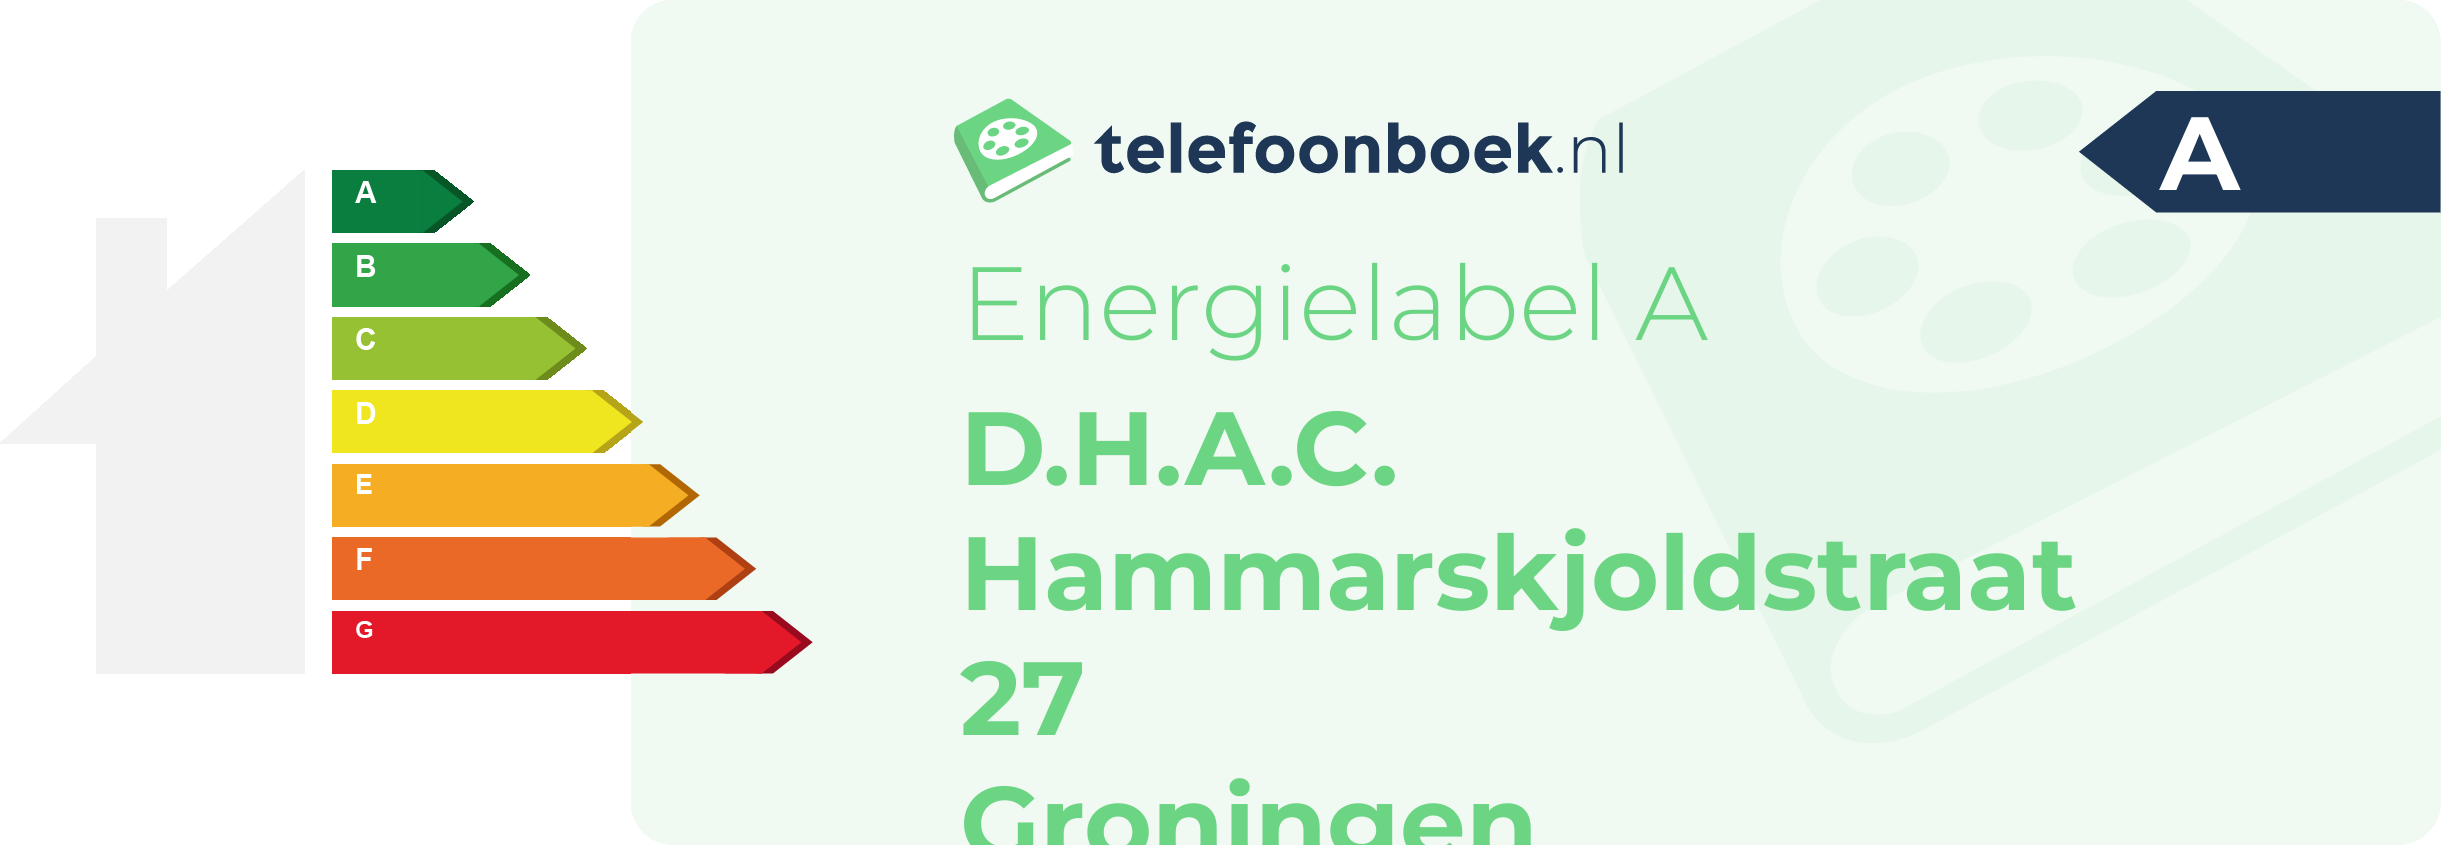 Energielabel D.H.A.C. Hammarskjoldstraat 27 Groningen